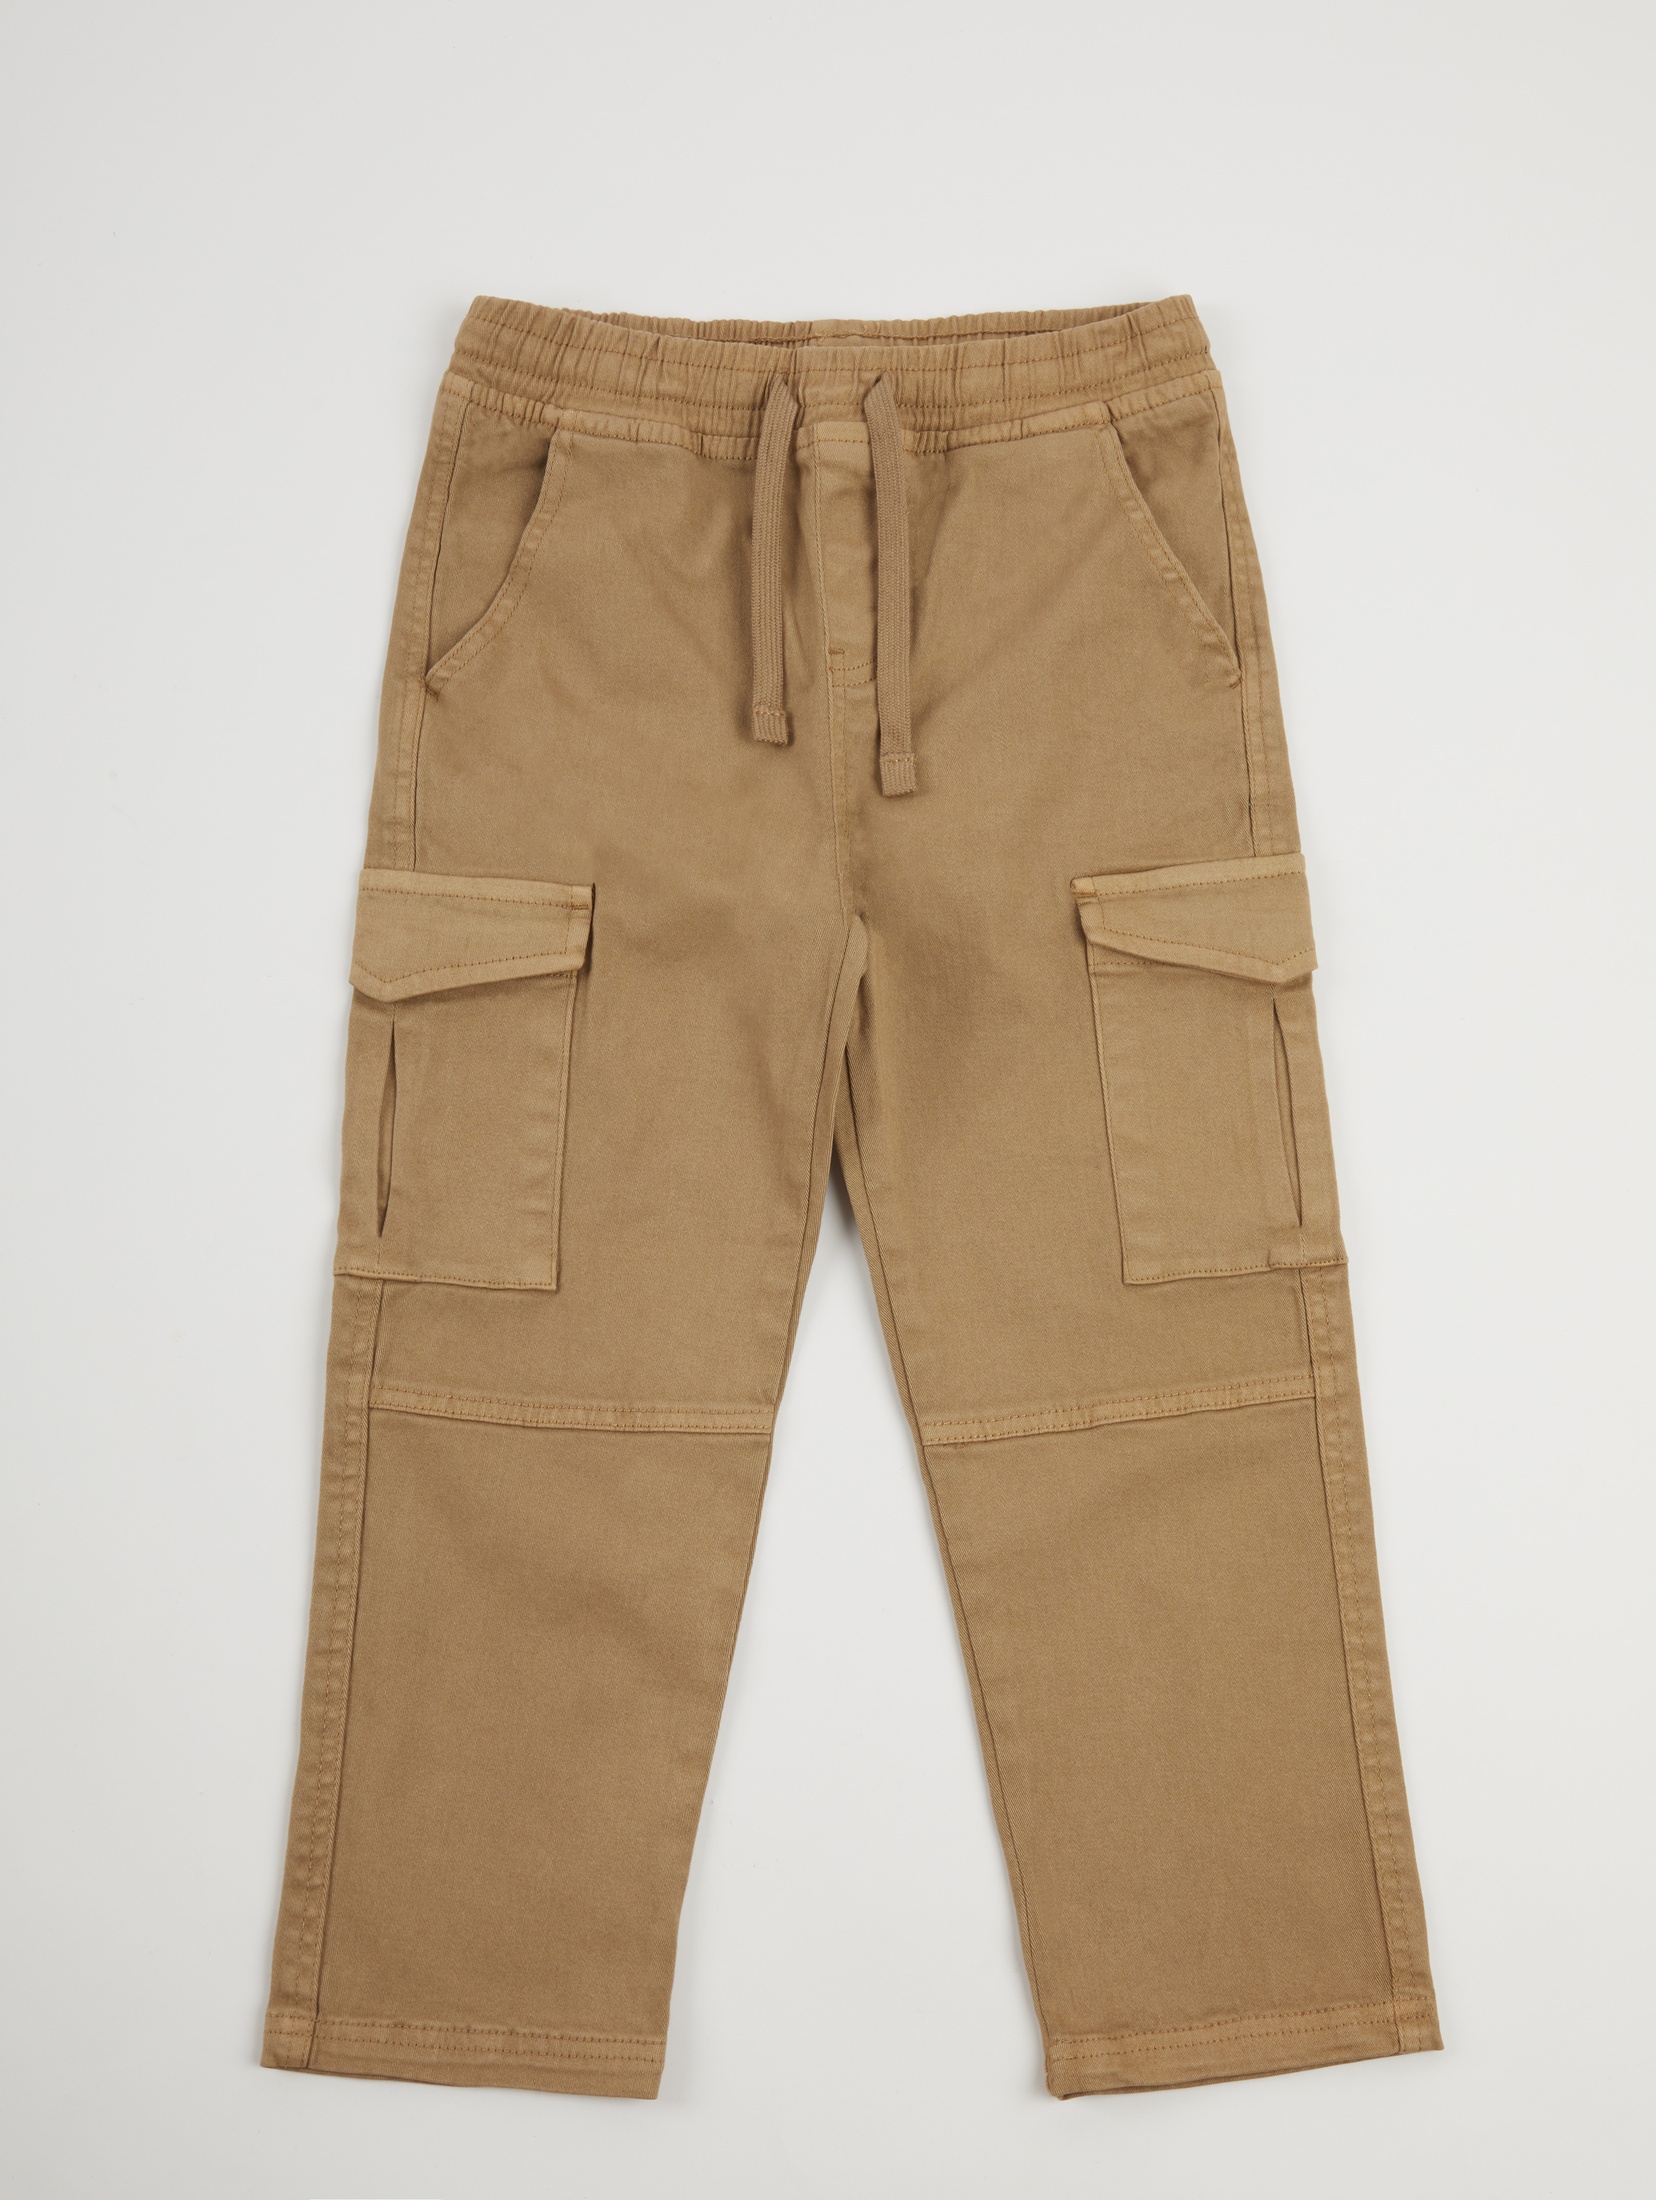 Spodnie bojówki dla dziecka - beżowe - unisex - Limited Edition